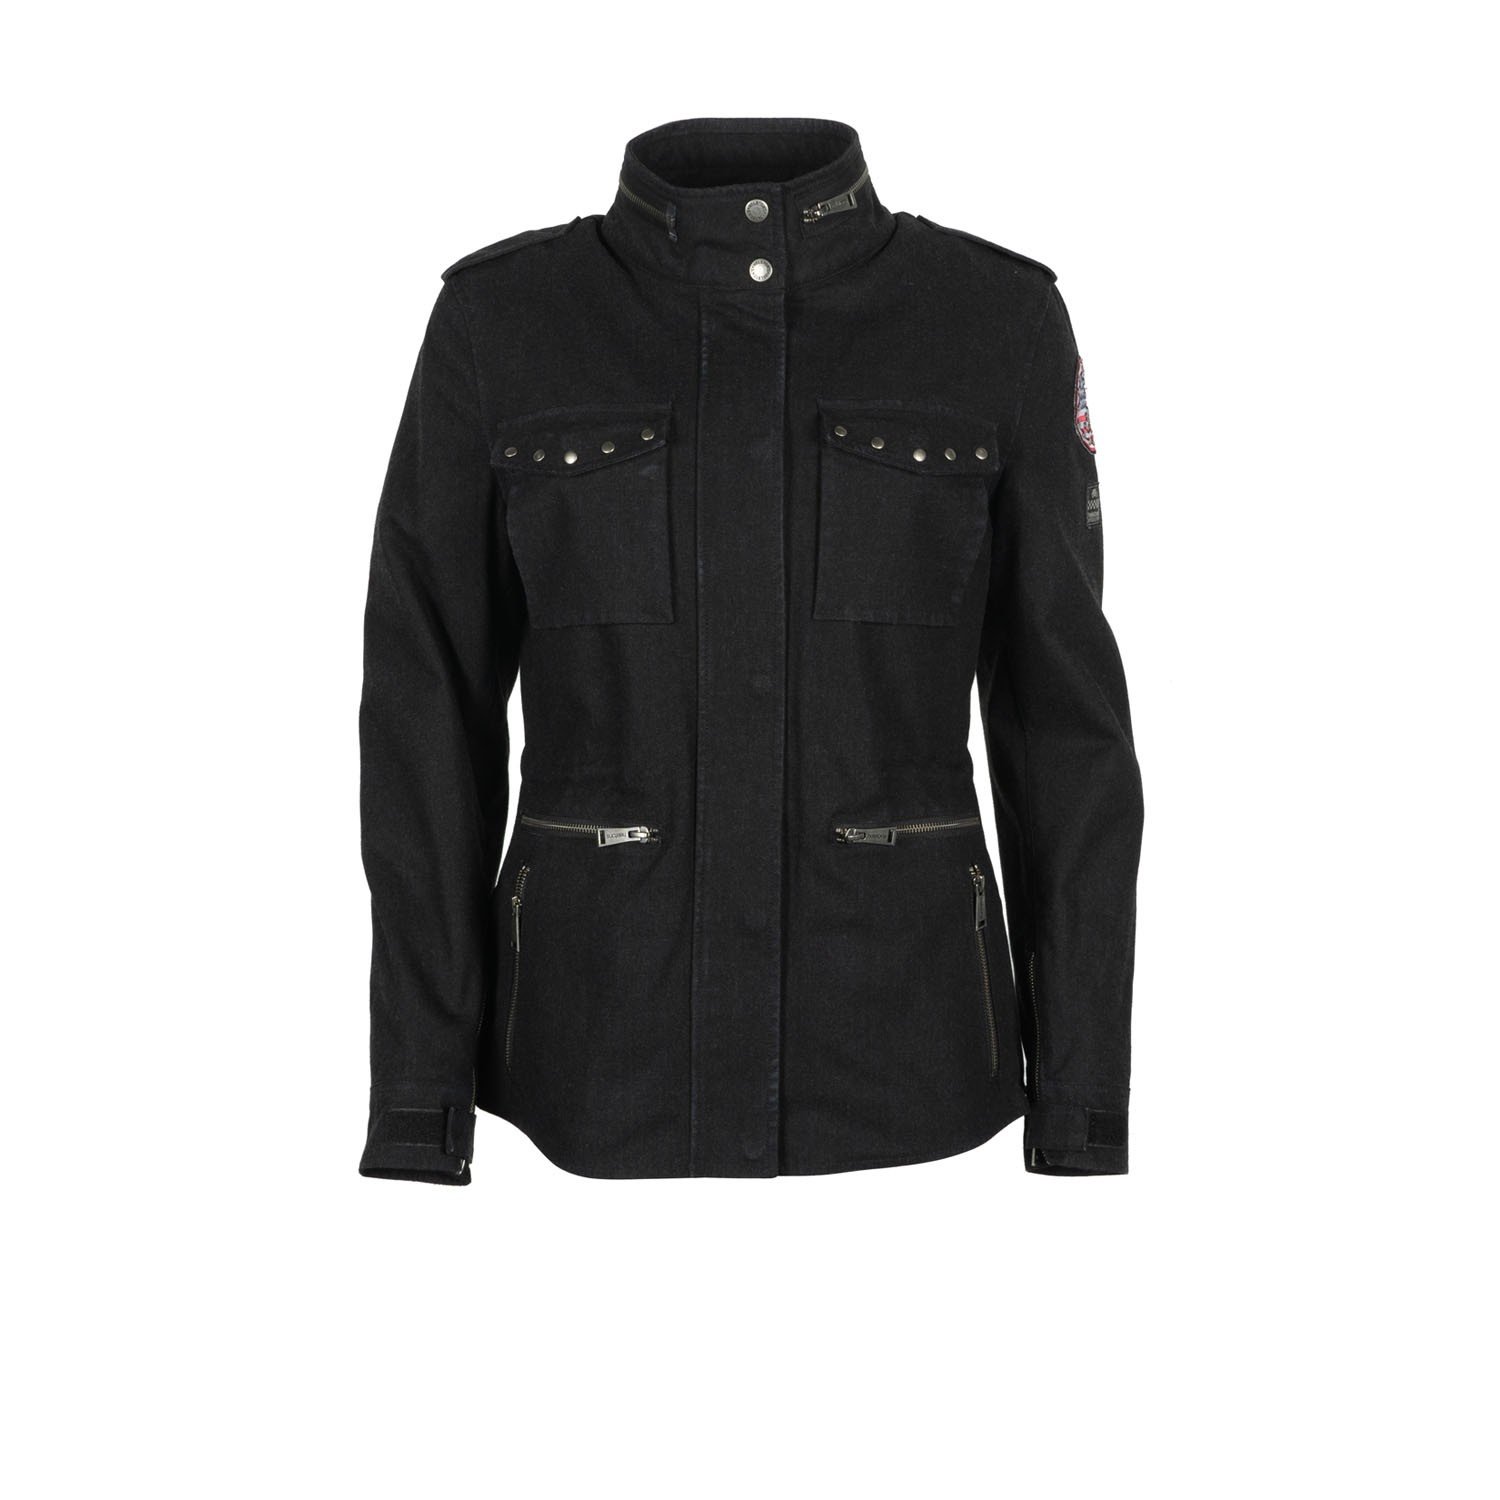 Image of Helstons Tara Canvas Cotton Jacket Black Size XL EN